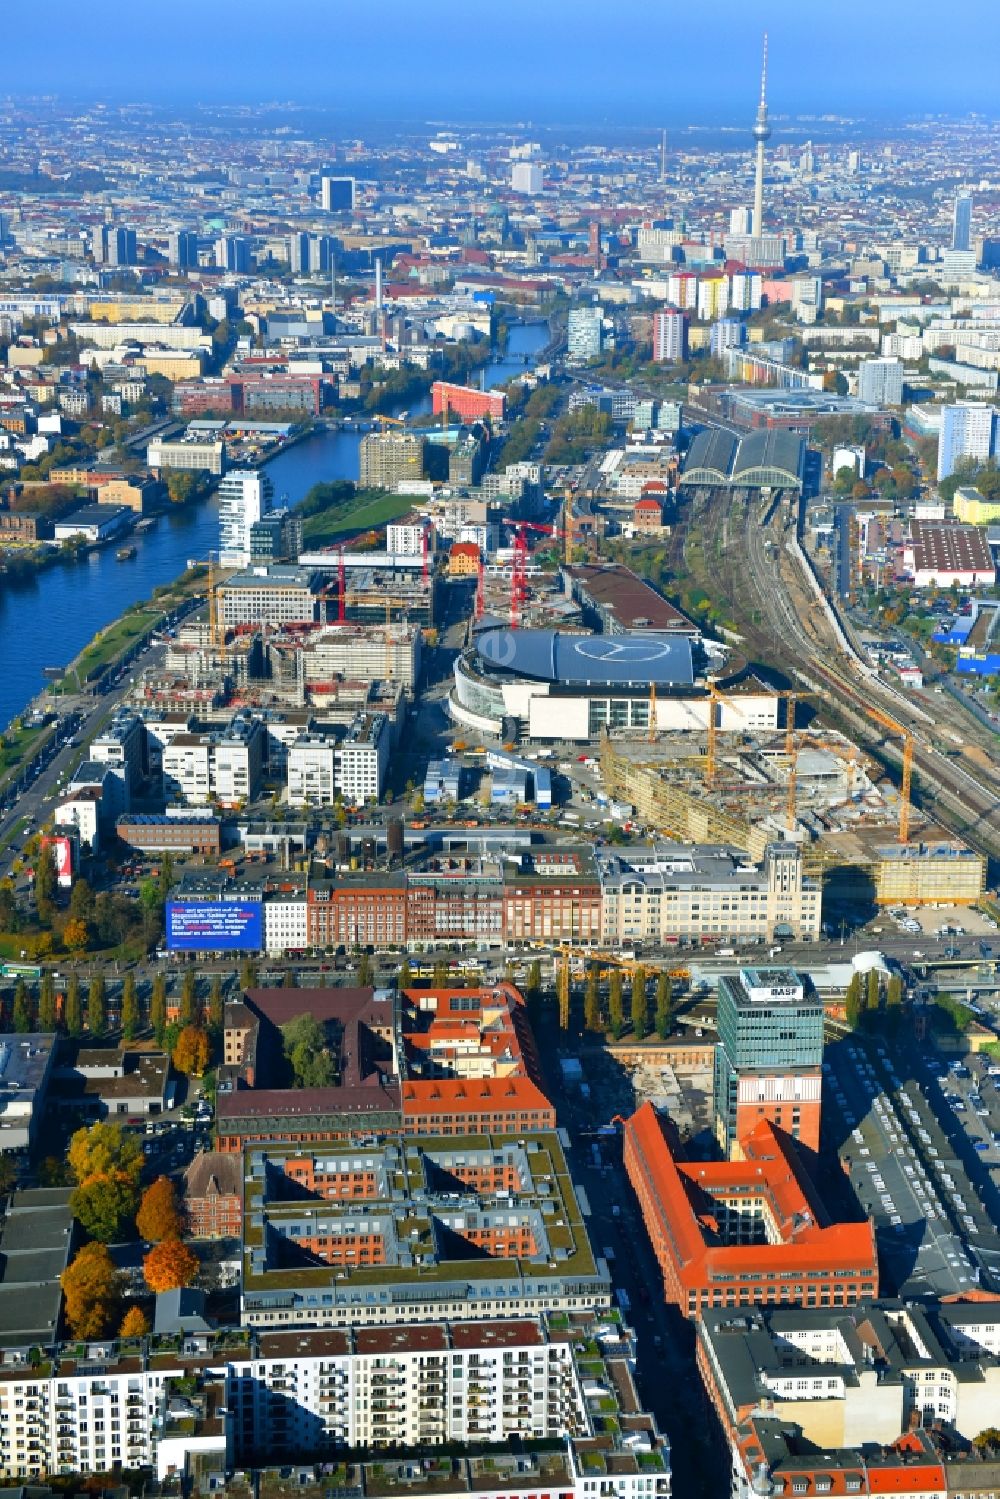 Luftaufnahme Berlin - Oberbaum City im Ortsteil Friedrichshain in Berlin